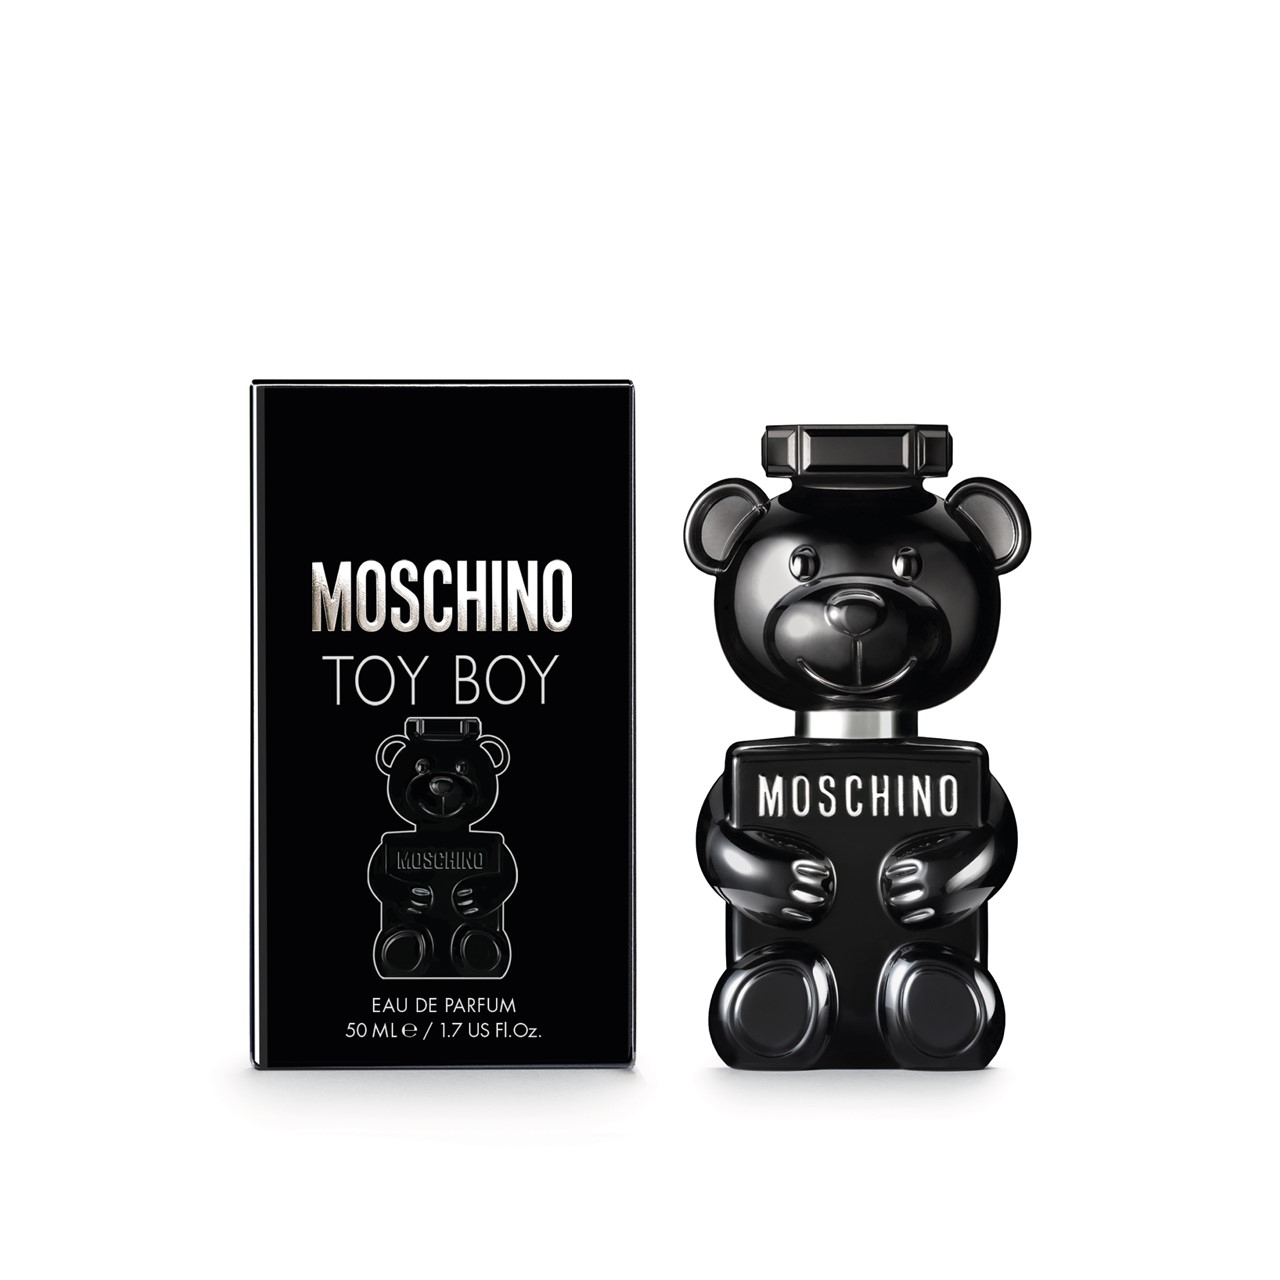 Moschino Toy Boy Eau de Parfum 50ml (1.7fl.oz.)